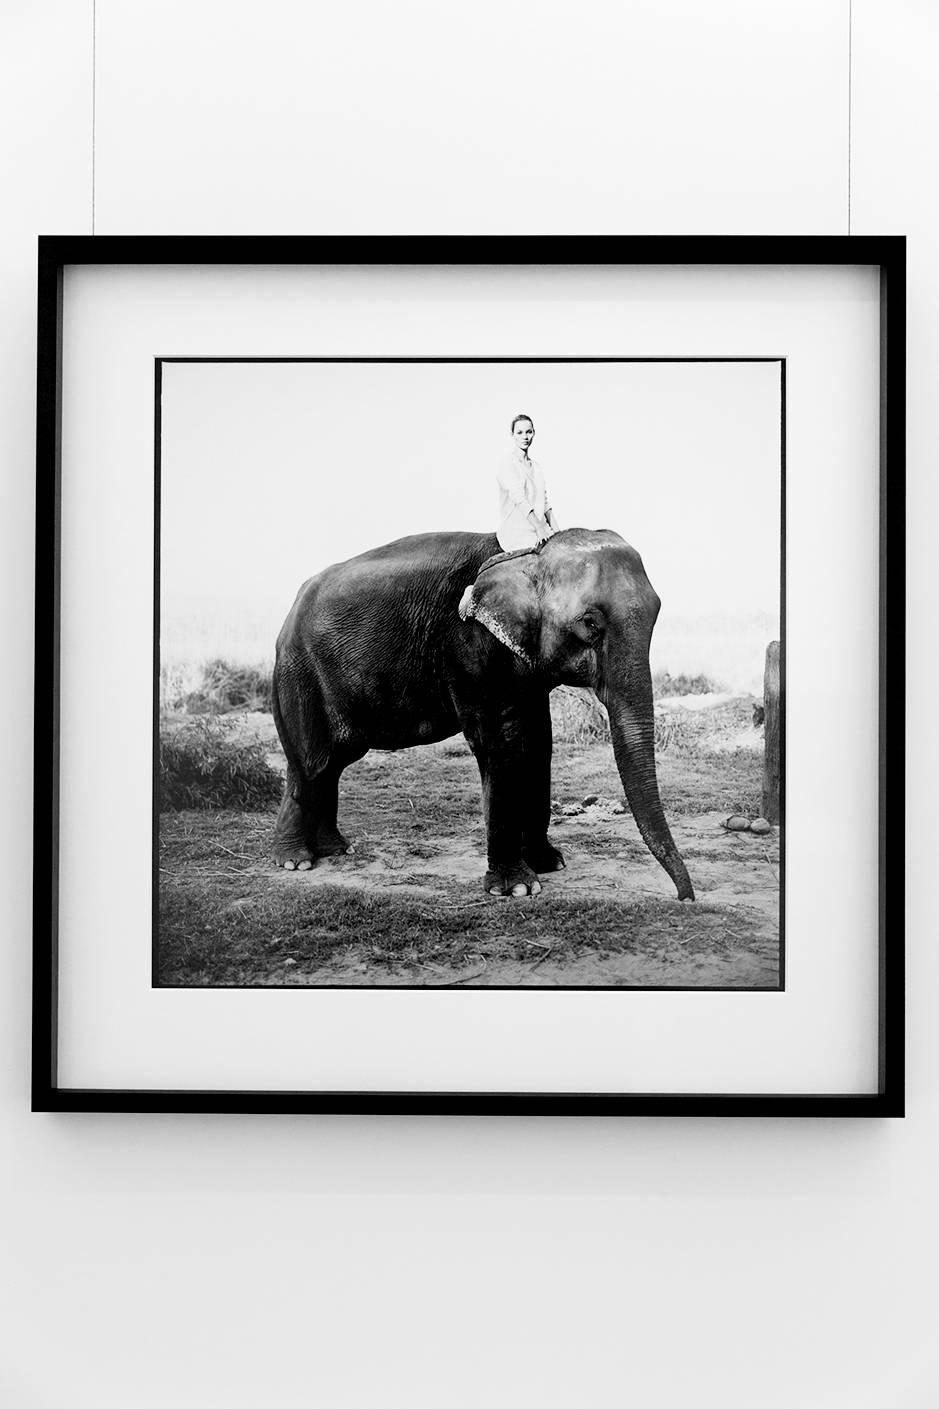 Kate Moss in Nepal, britische Vogue – Modell auf Elefanten, Kunstfotografie 1993 – Photograph von Arthur Elgort